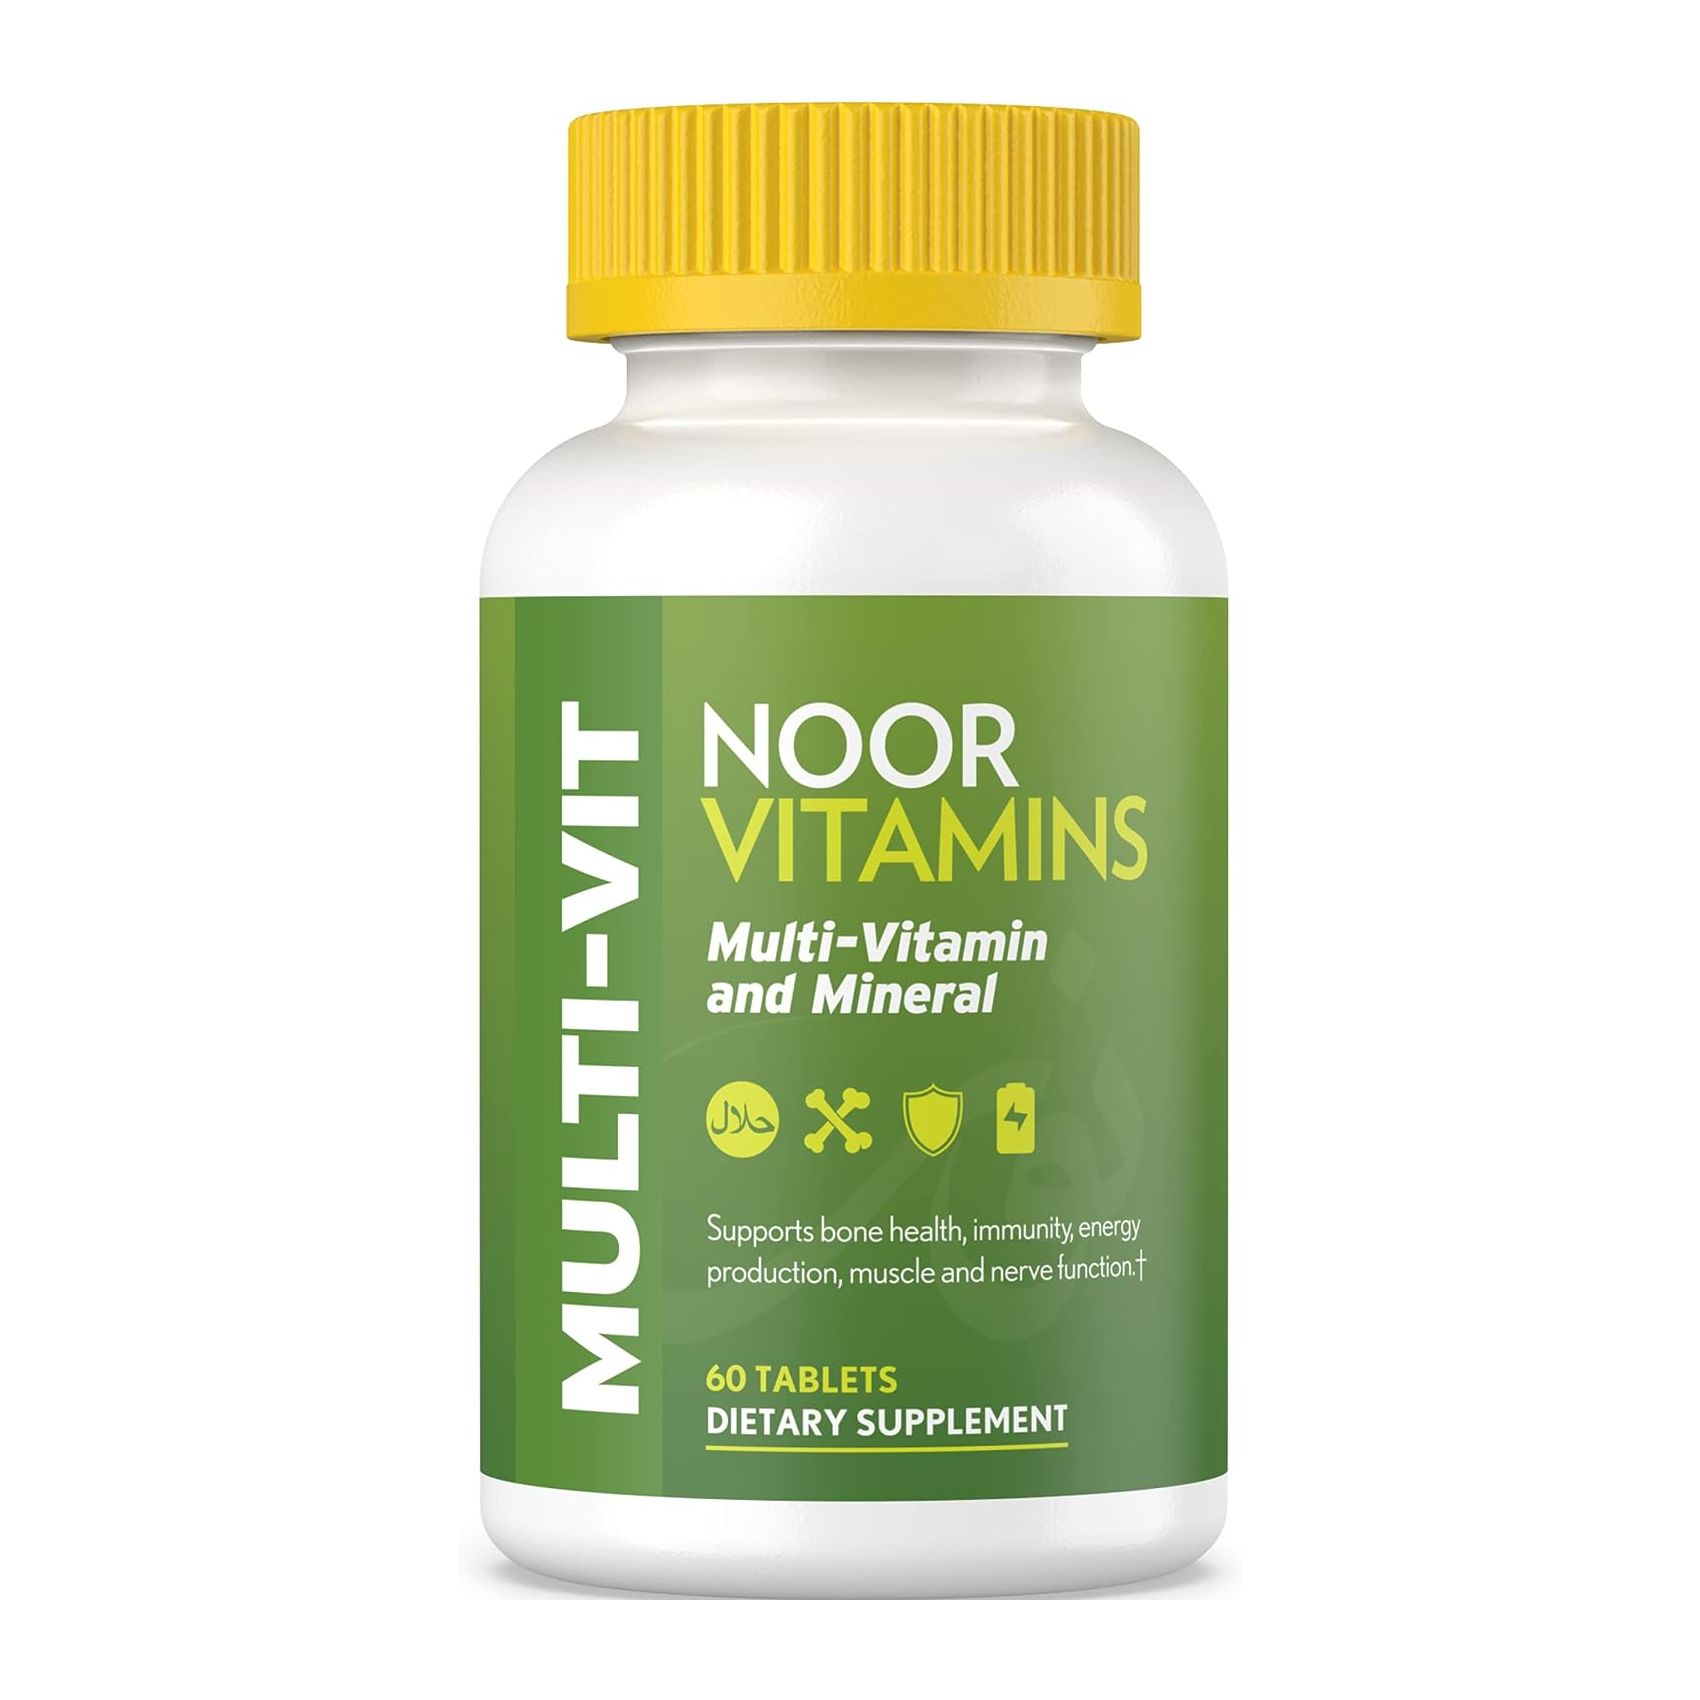 Мультивитамины Noor Vitamins Halal, 60 таблеток noor витамины мультивитамины и минералы 60 таблеток noor vitamins